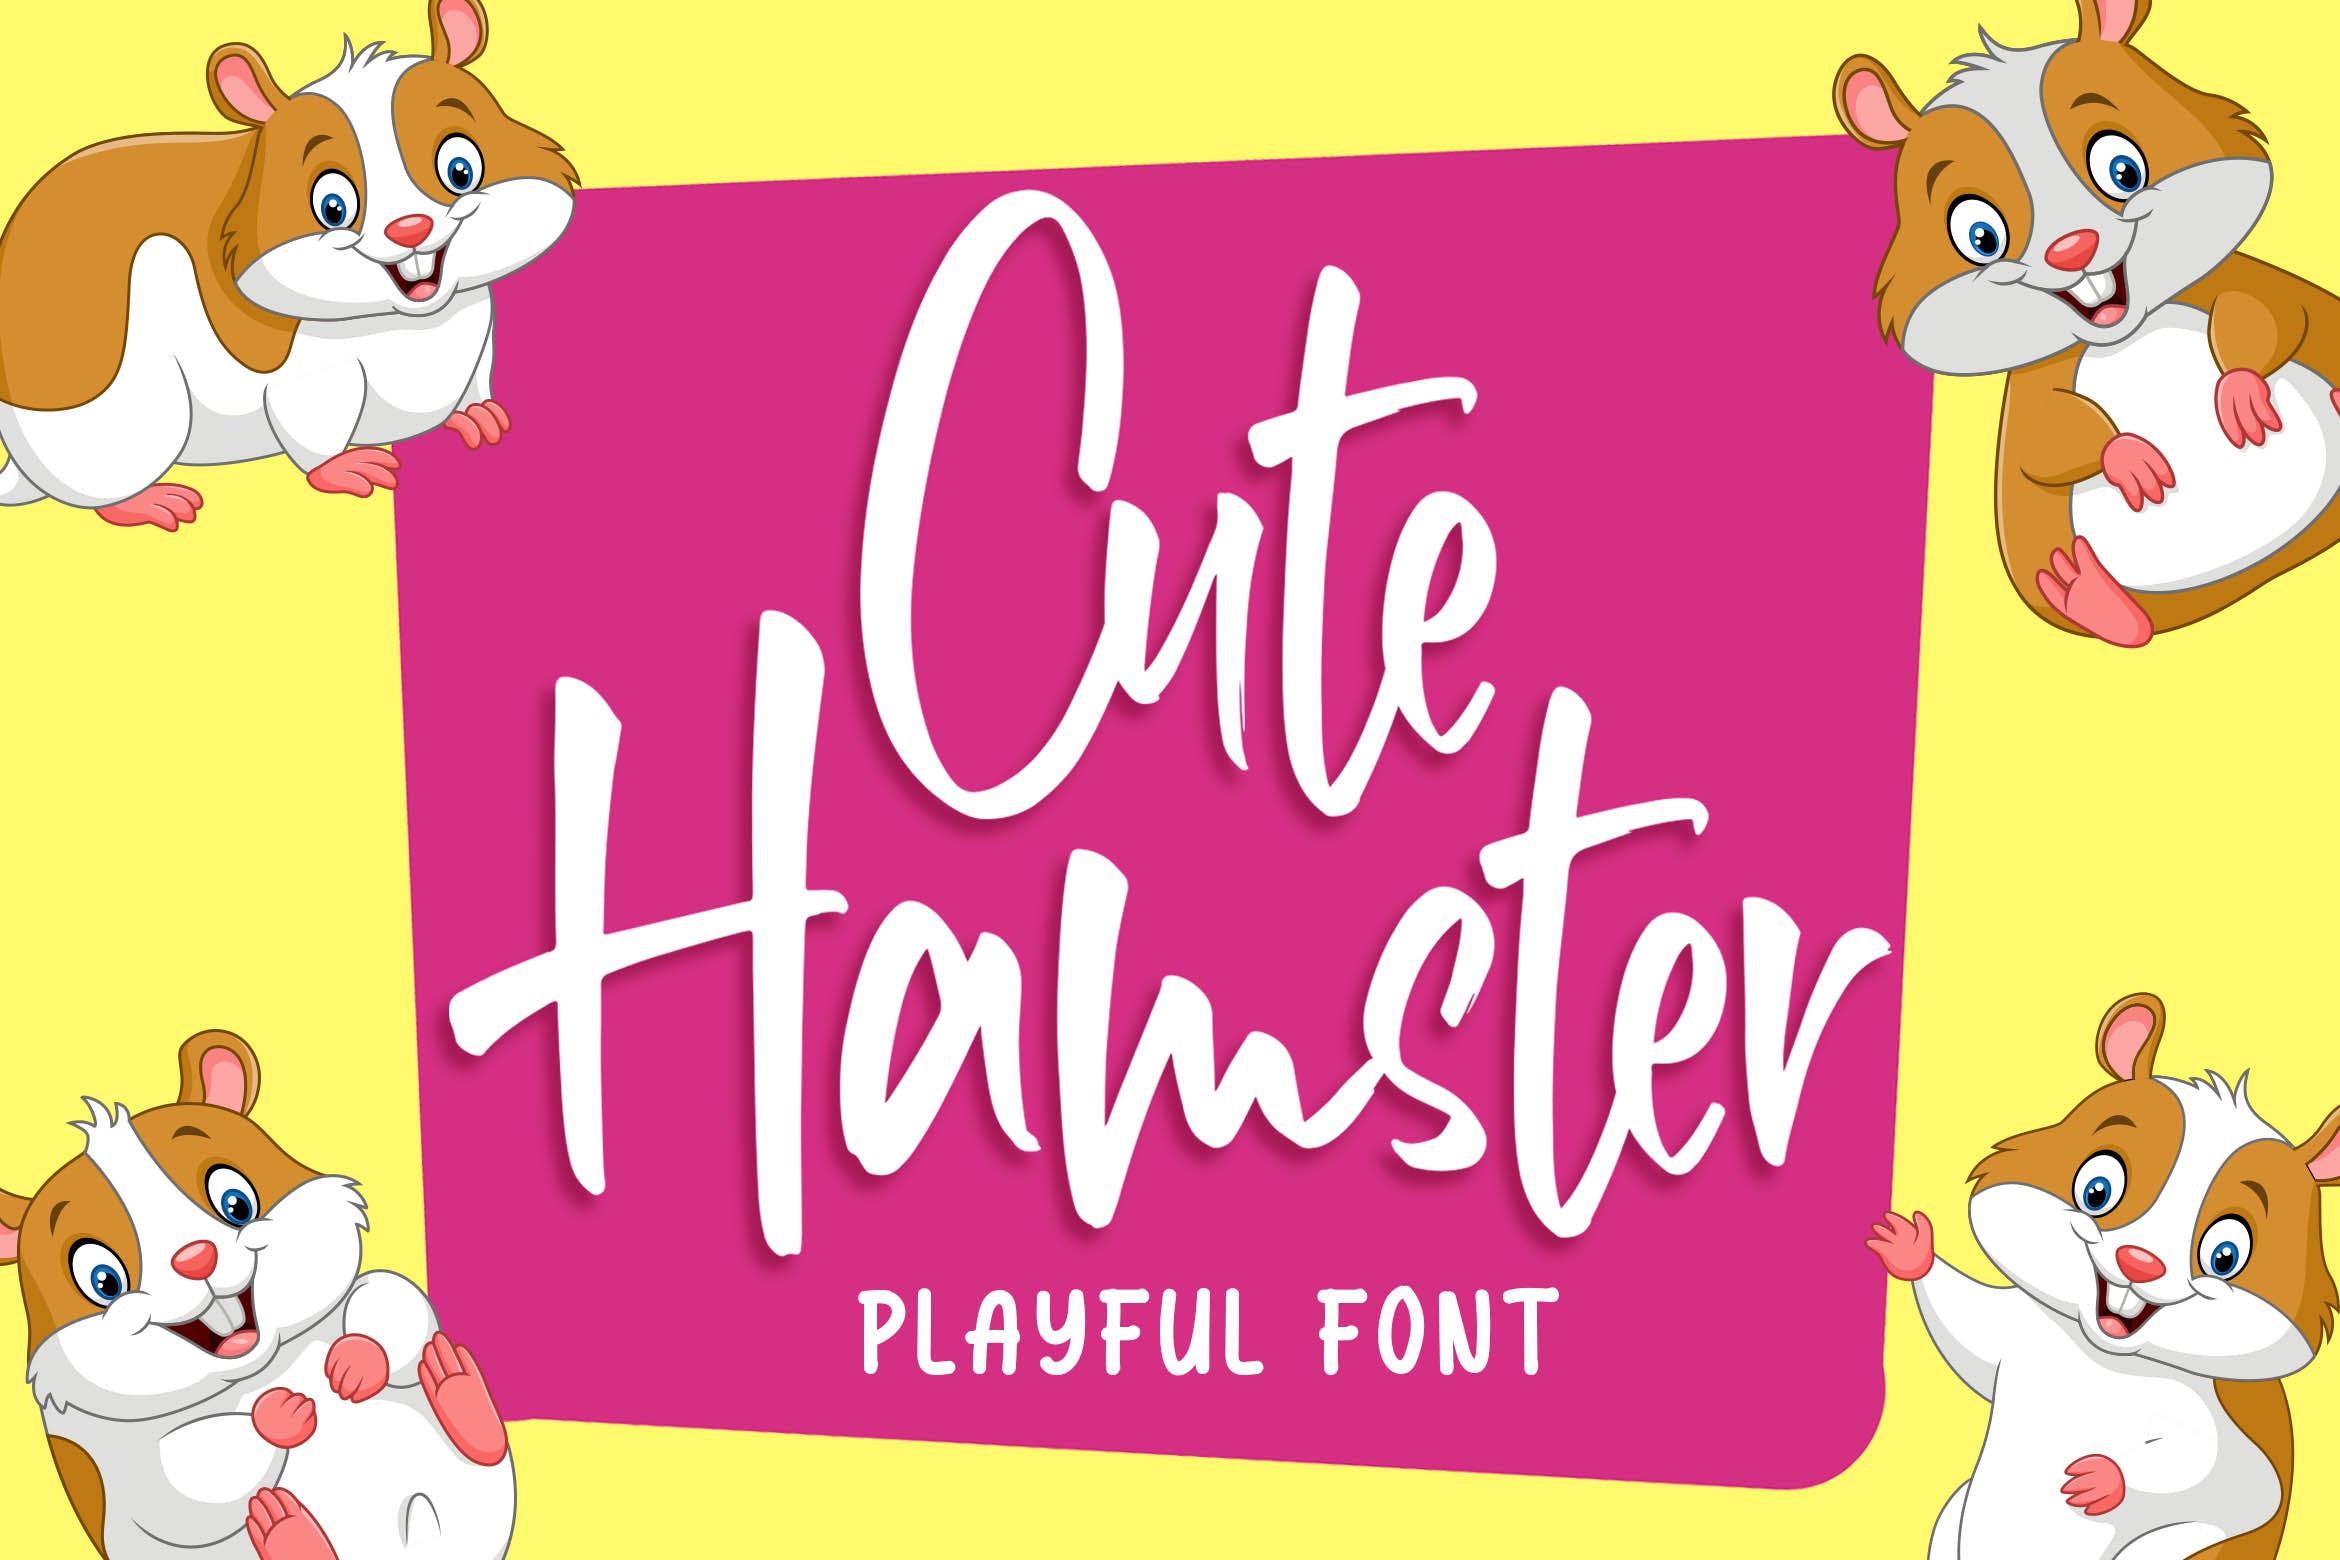 俏皮可爱风格英文手写装饰字体素材库精选 Cute Hamster – Playful Font插图